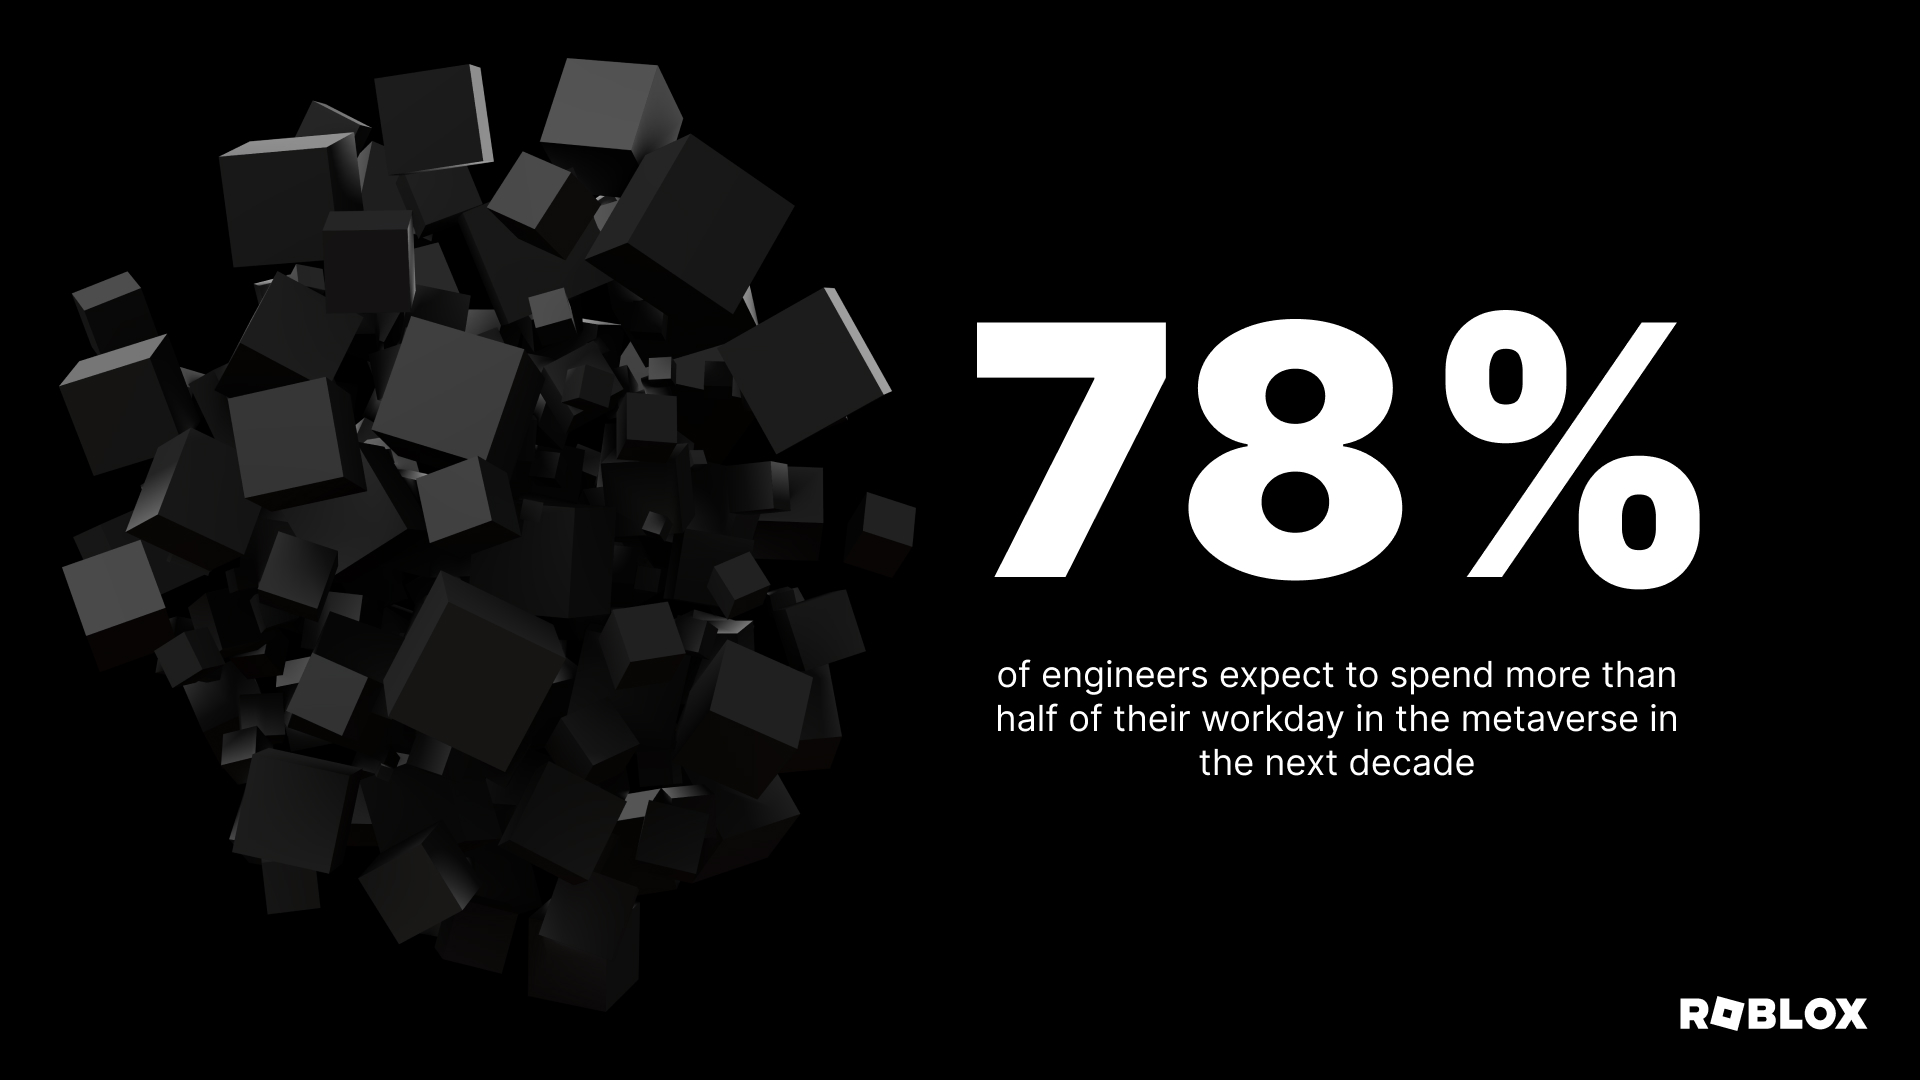 El 78 % de los ingenieros espera pasar más de la mitad de su jornada laboral en el metaverso en la próxima década